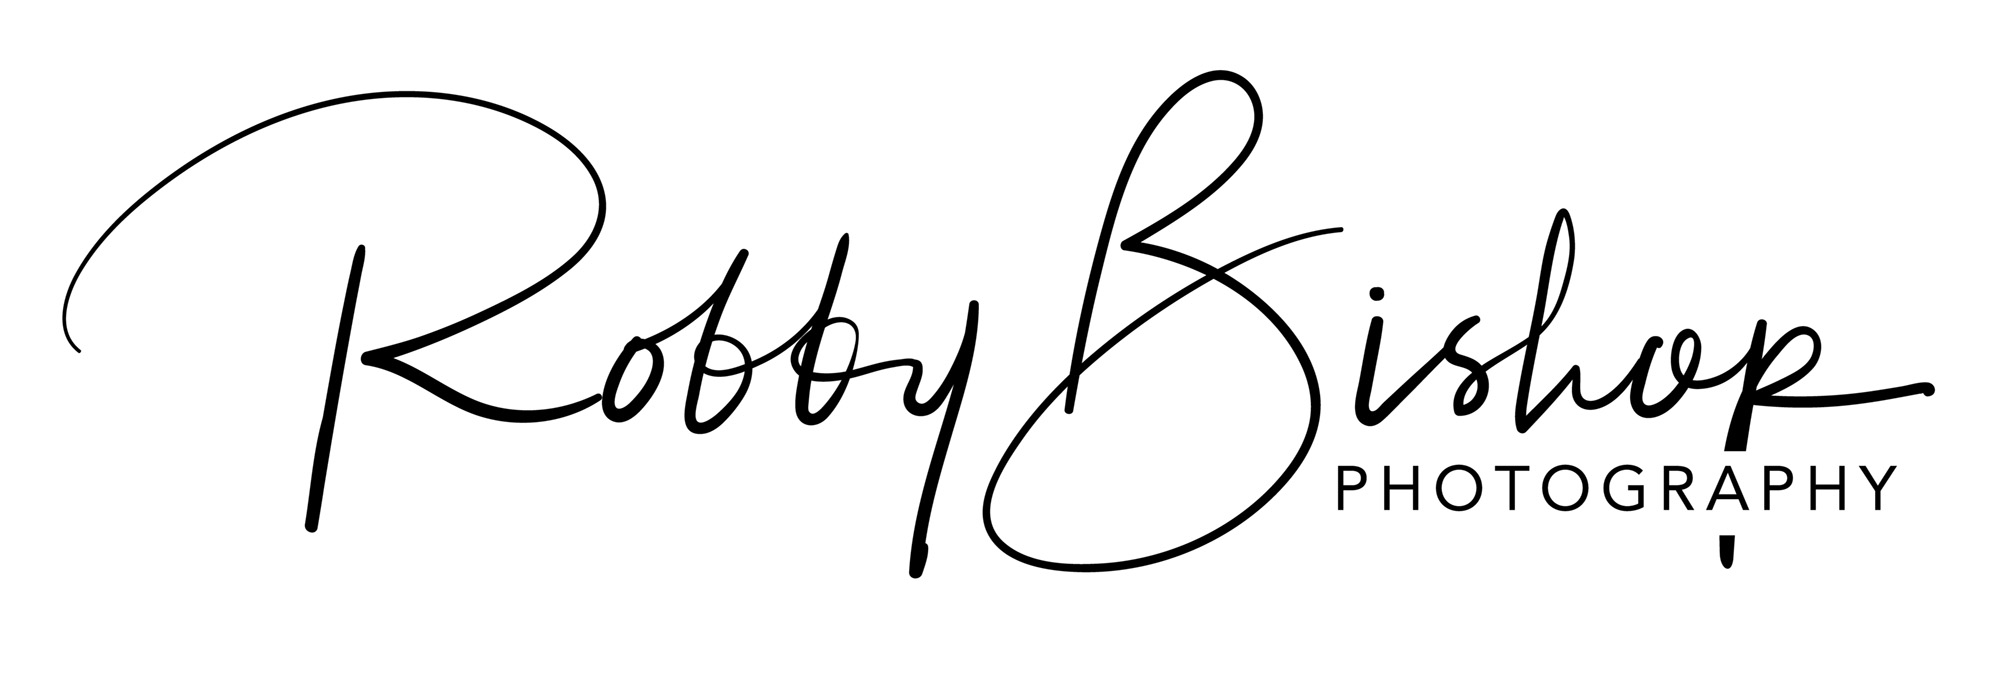 ROBBY BISHOP